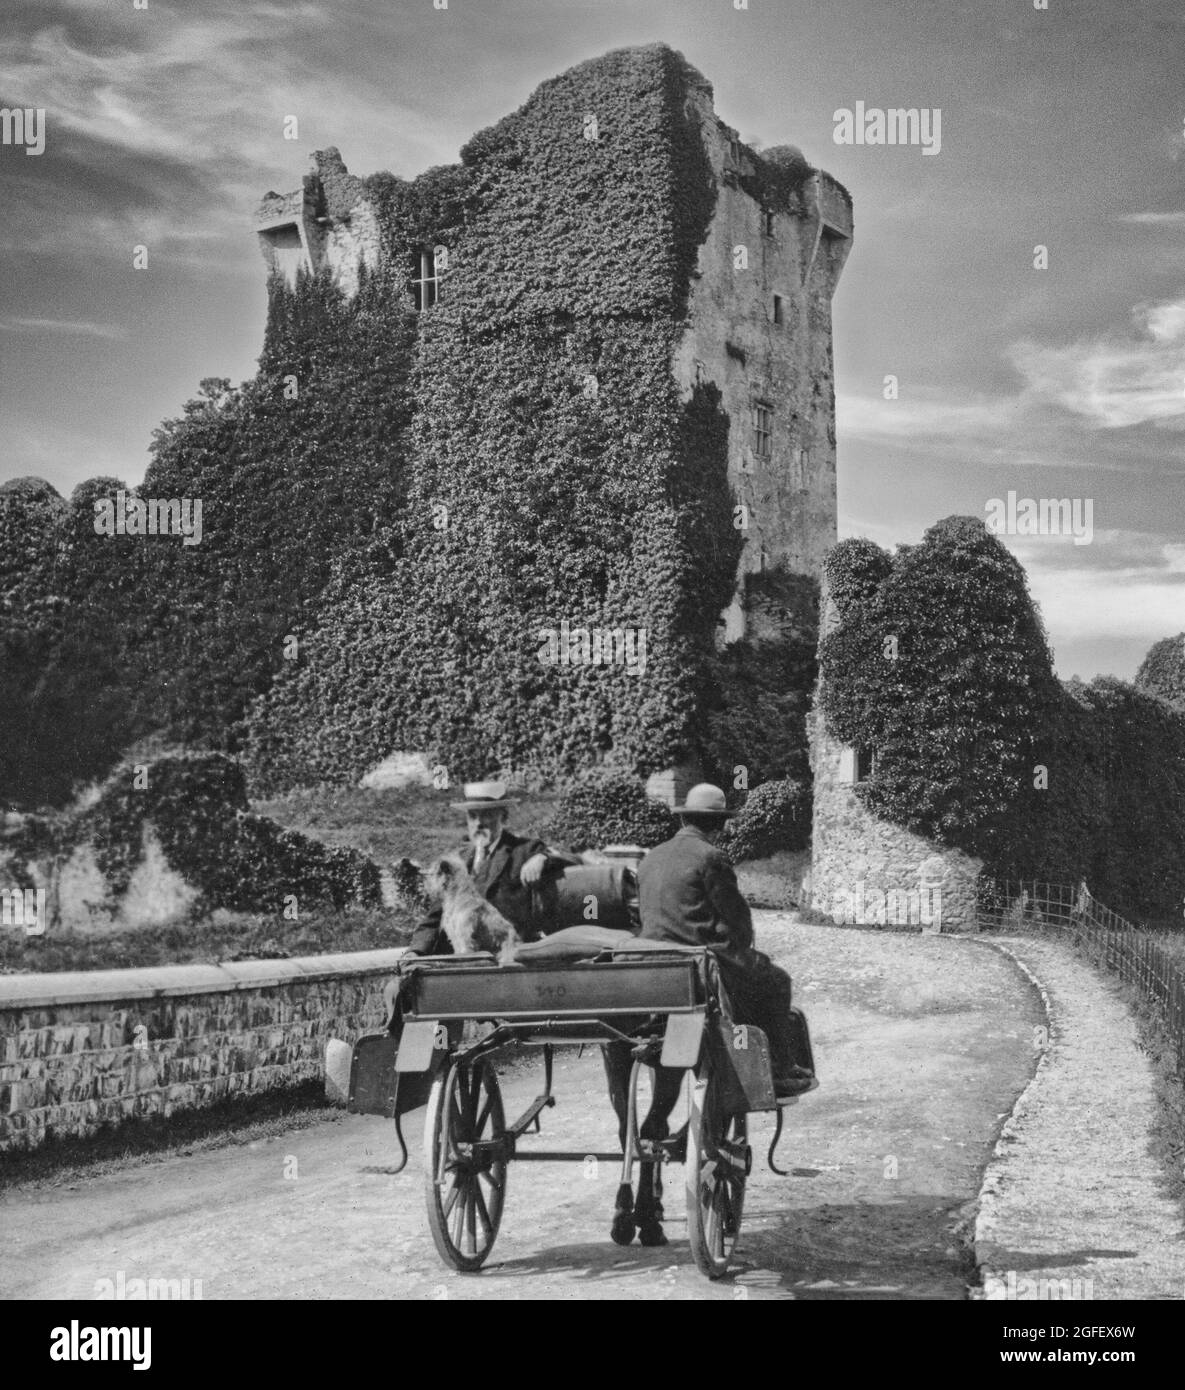 Une vue du début du XXe siècle d'une voiture hantante avec des touristes approchant le château de Ross, une tour du XVe siècle ruinée et surcultivée, et continuez sur le bord de Lough Leane, dans le parc national de Killarney, comté de Kerry, Irlande. Banque D'Images